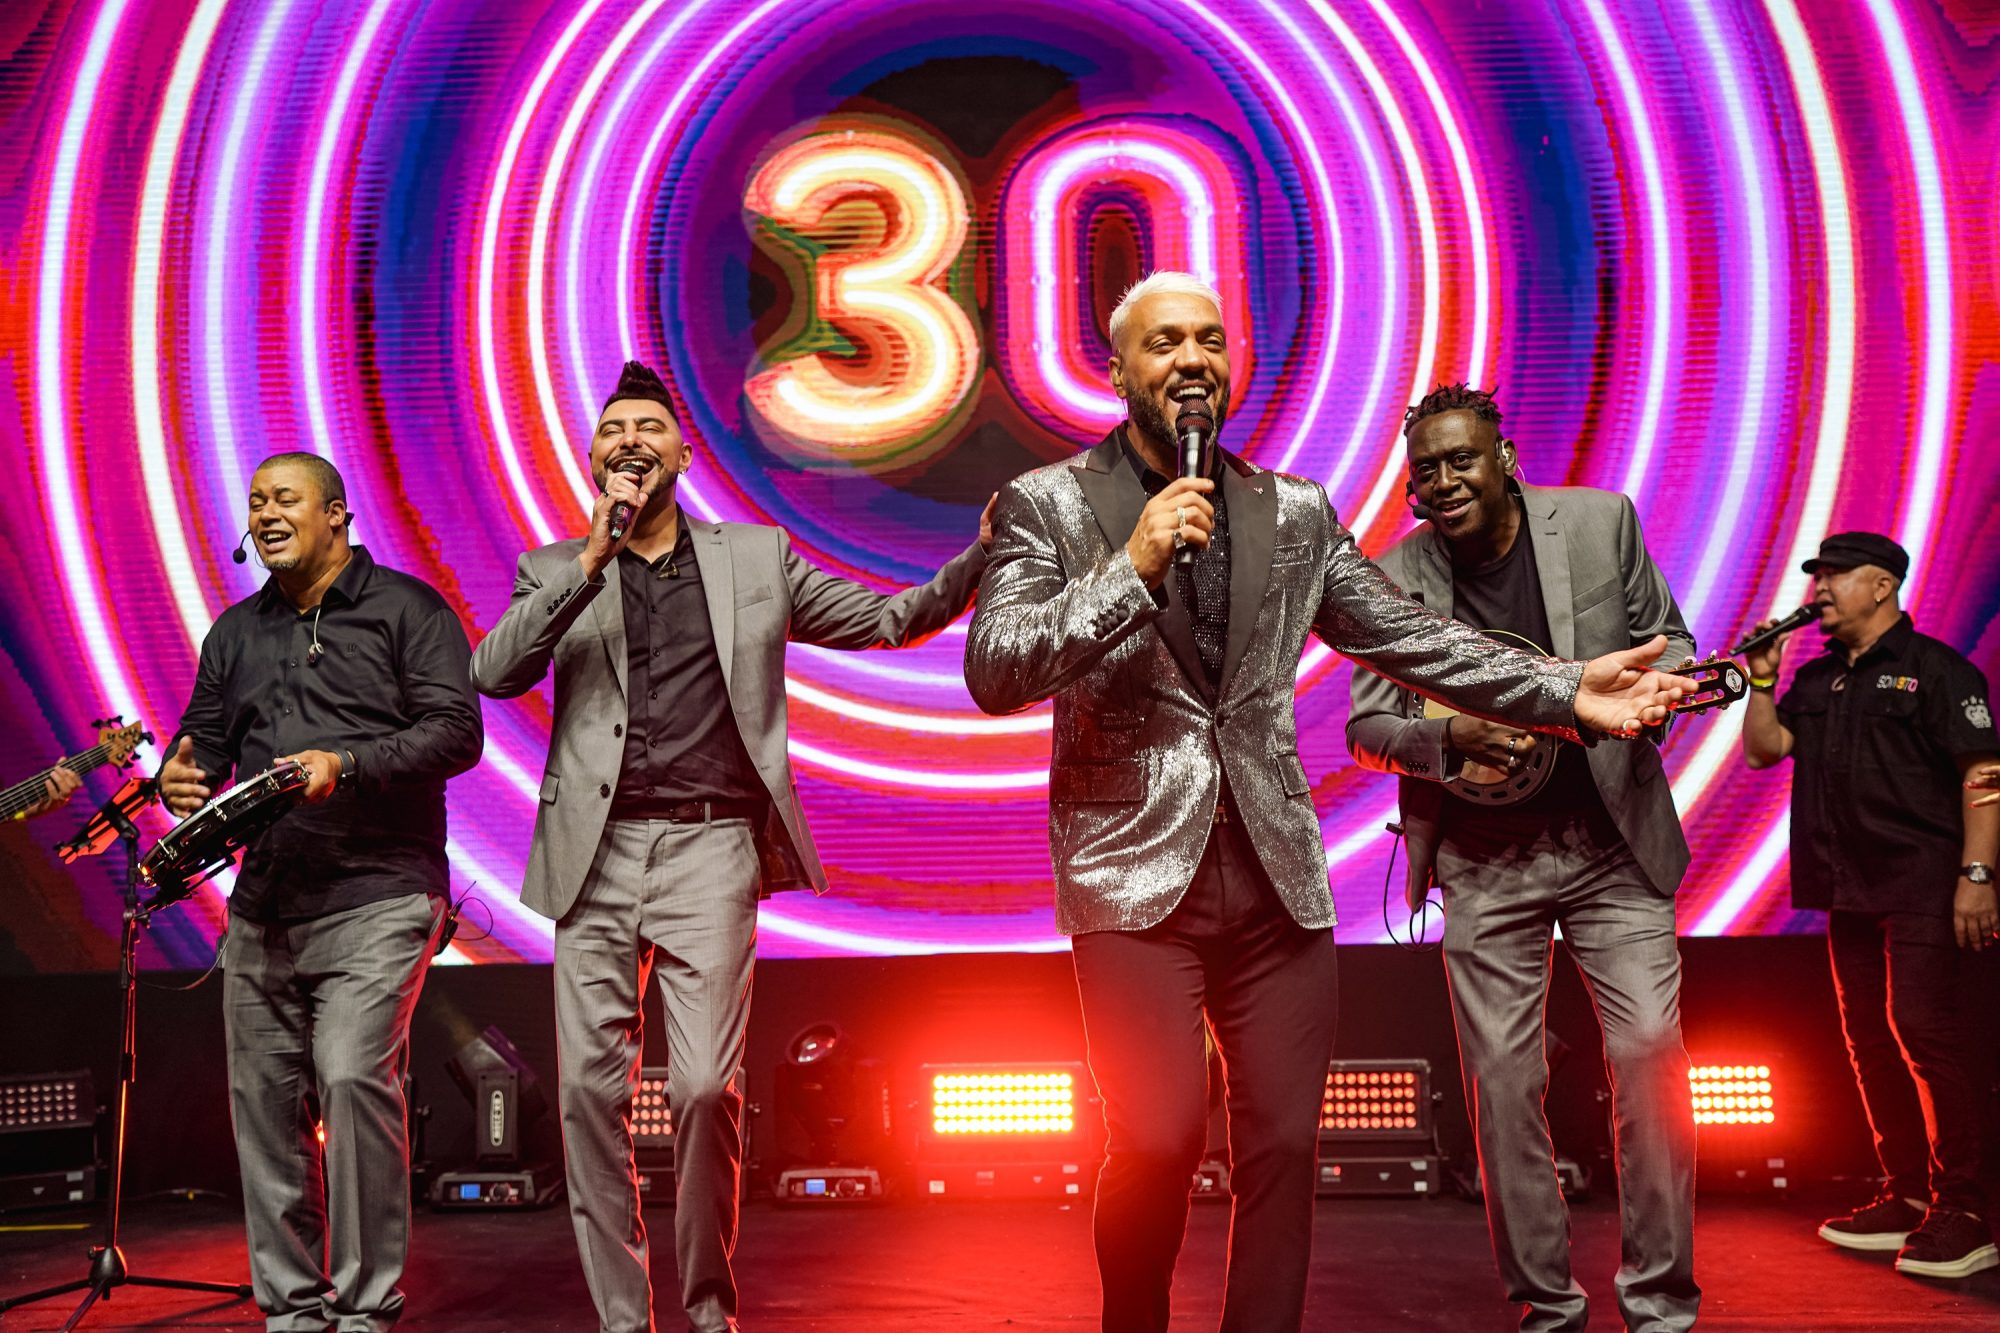 Com Belo nos vocais, Soweto traz para o Recife, neste sábado (27), a turnê comemorativa de 30 anos do grupo